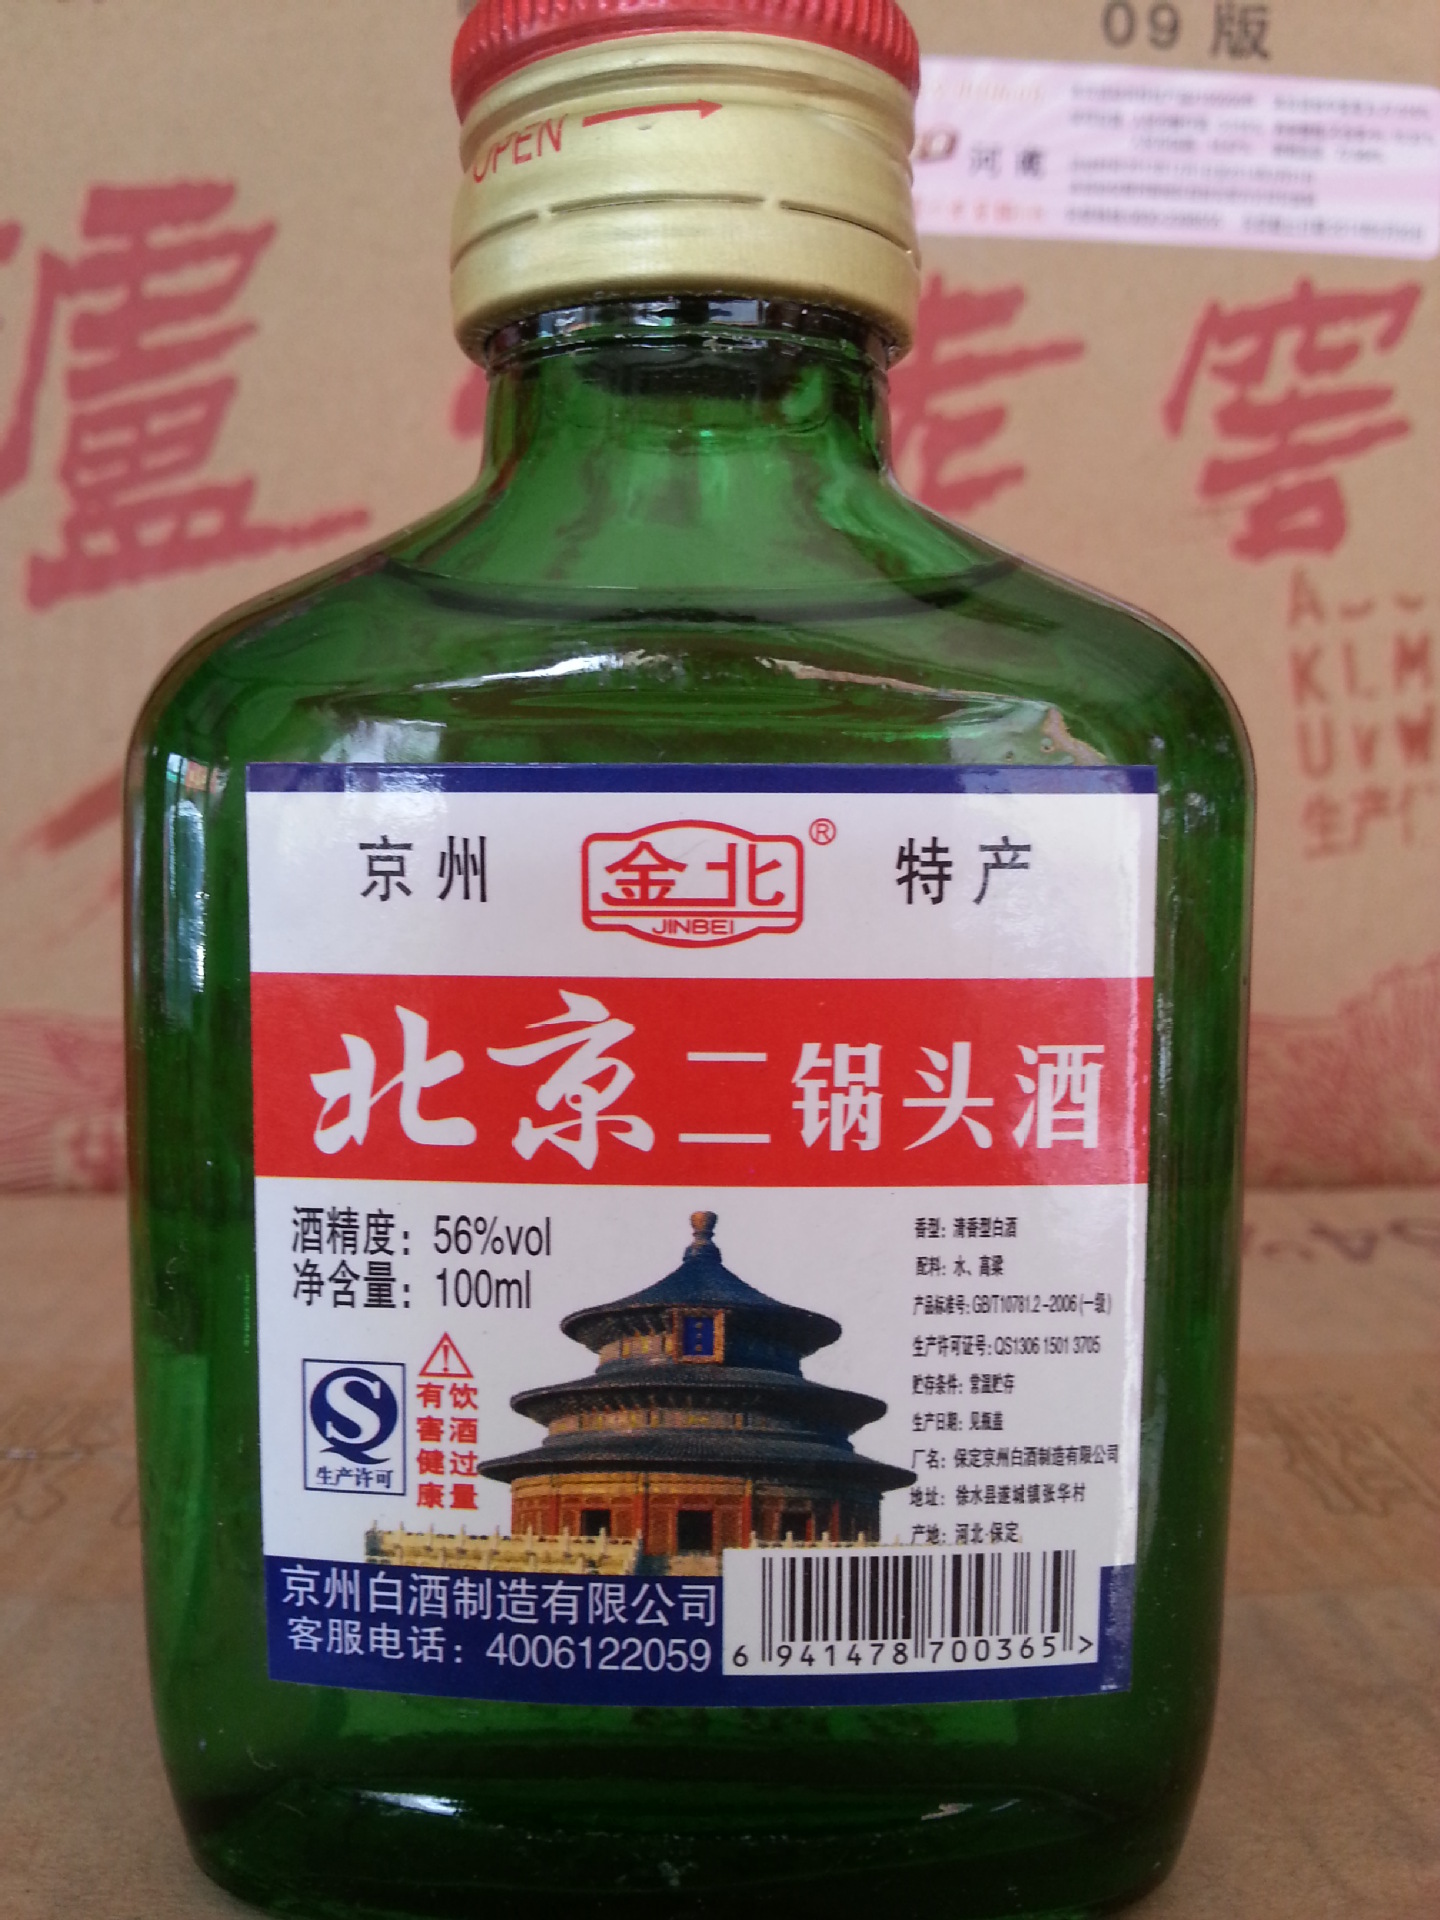 厂家直销 金北牌北京二锅头白酒 图片